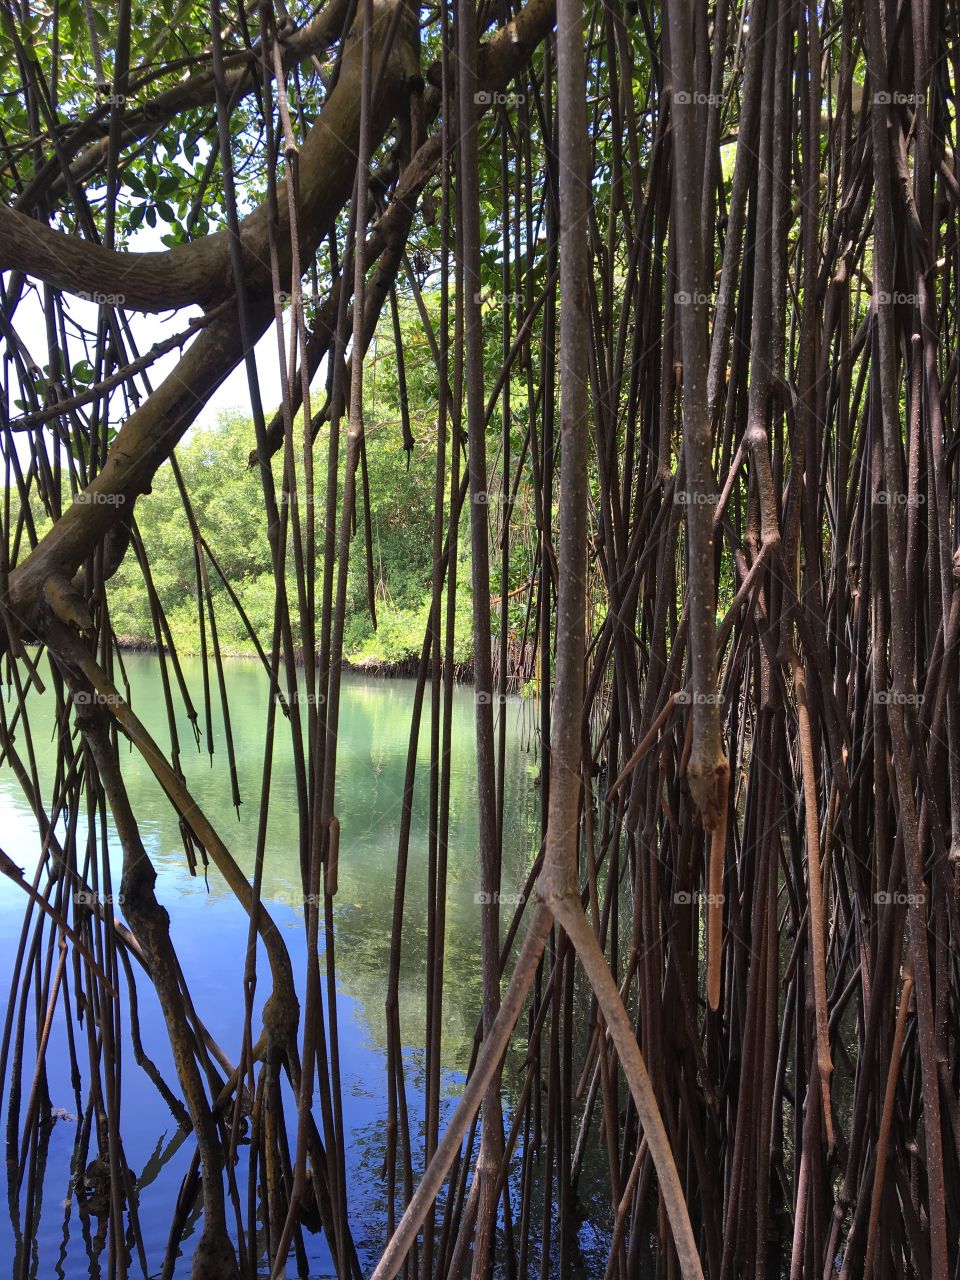 Close-up of mangrove roots at lake